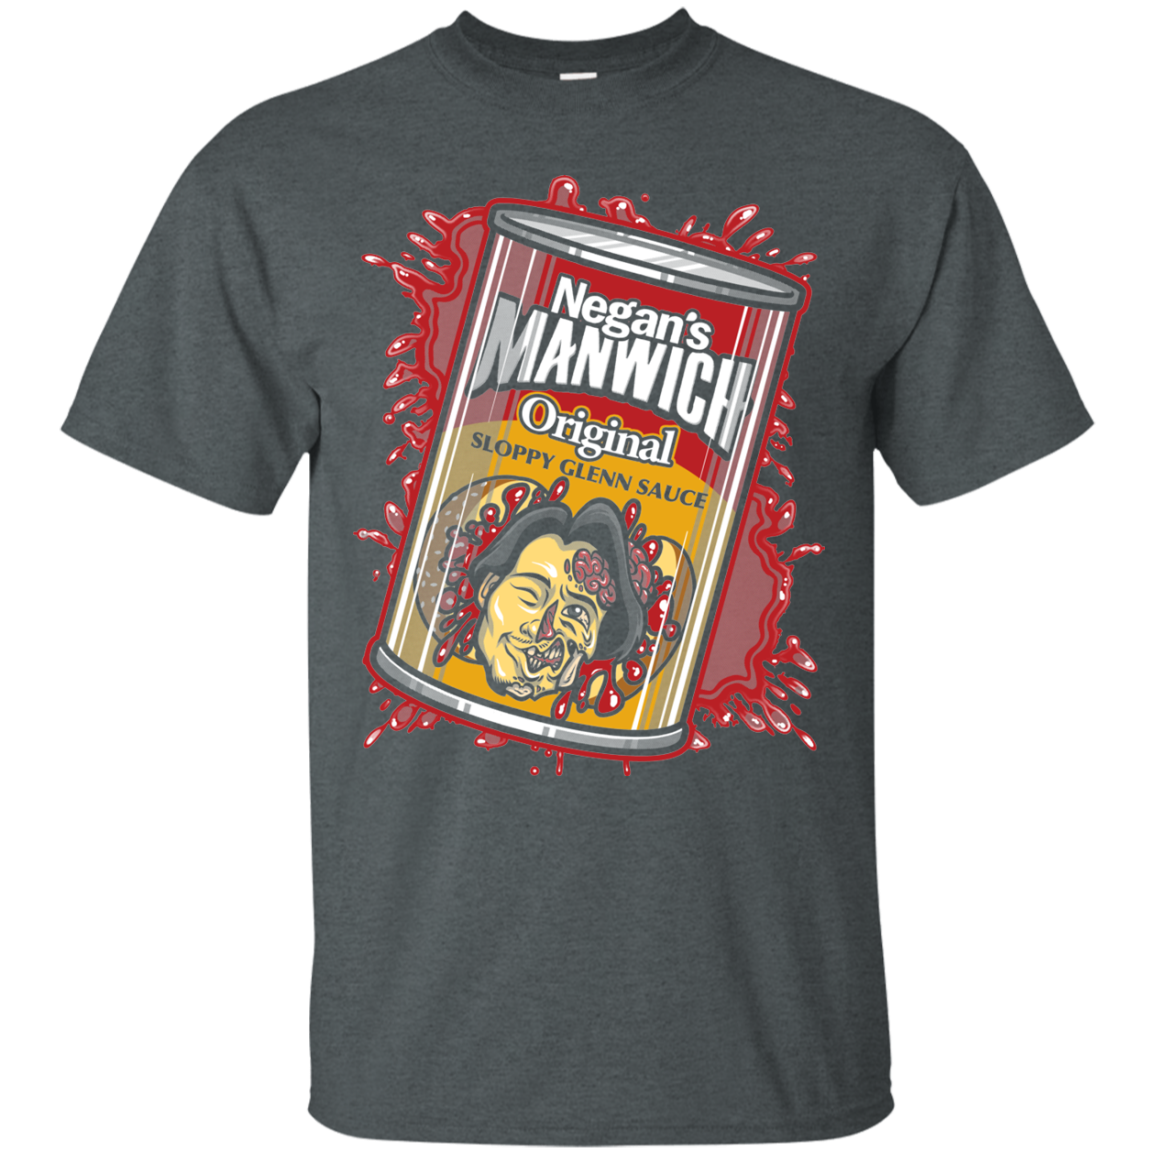 Negans Manwich T-Shirt